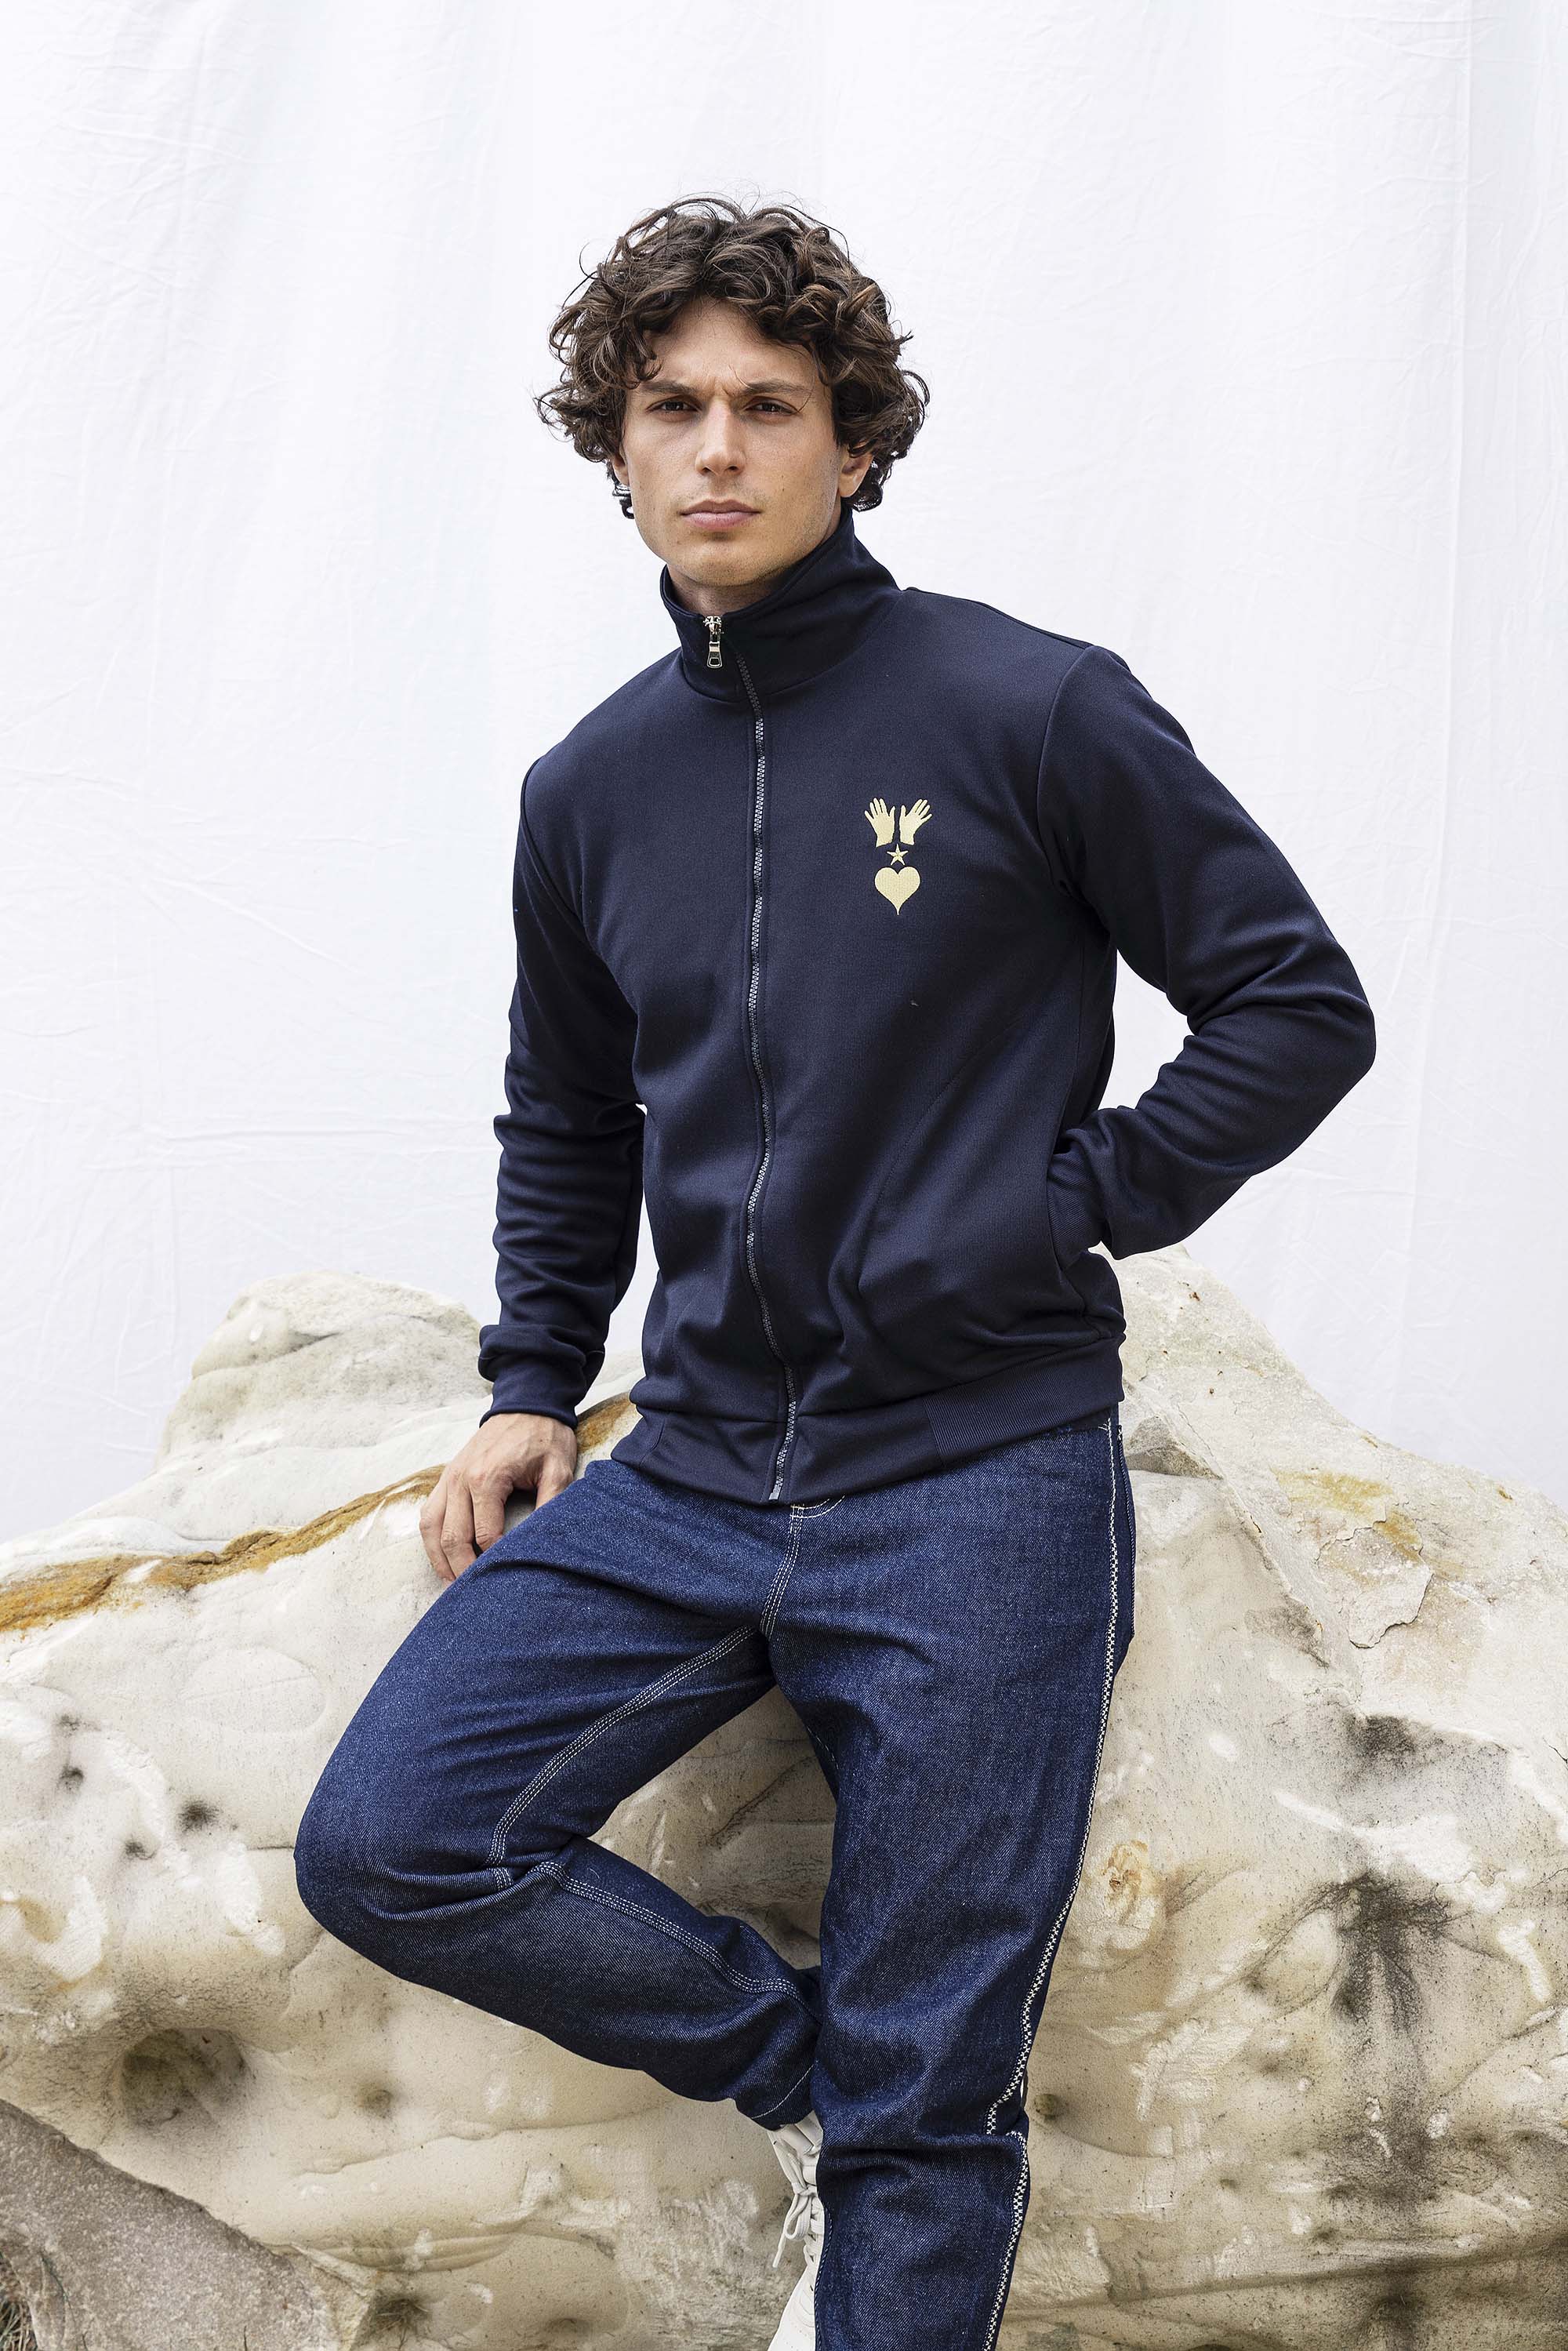 Veste de Sport Clasica Volcano Bleu Marine élément incontournable des tenues masculines, la veste est une pièce polyvalente